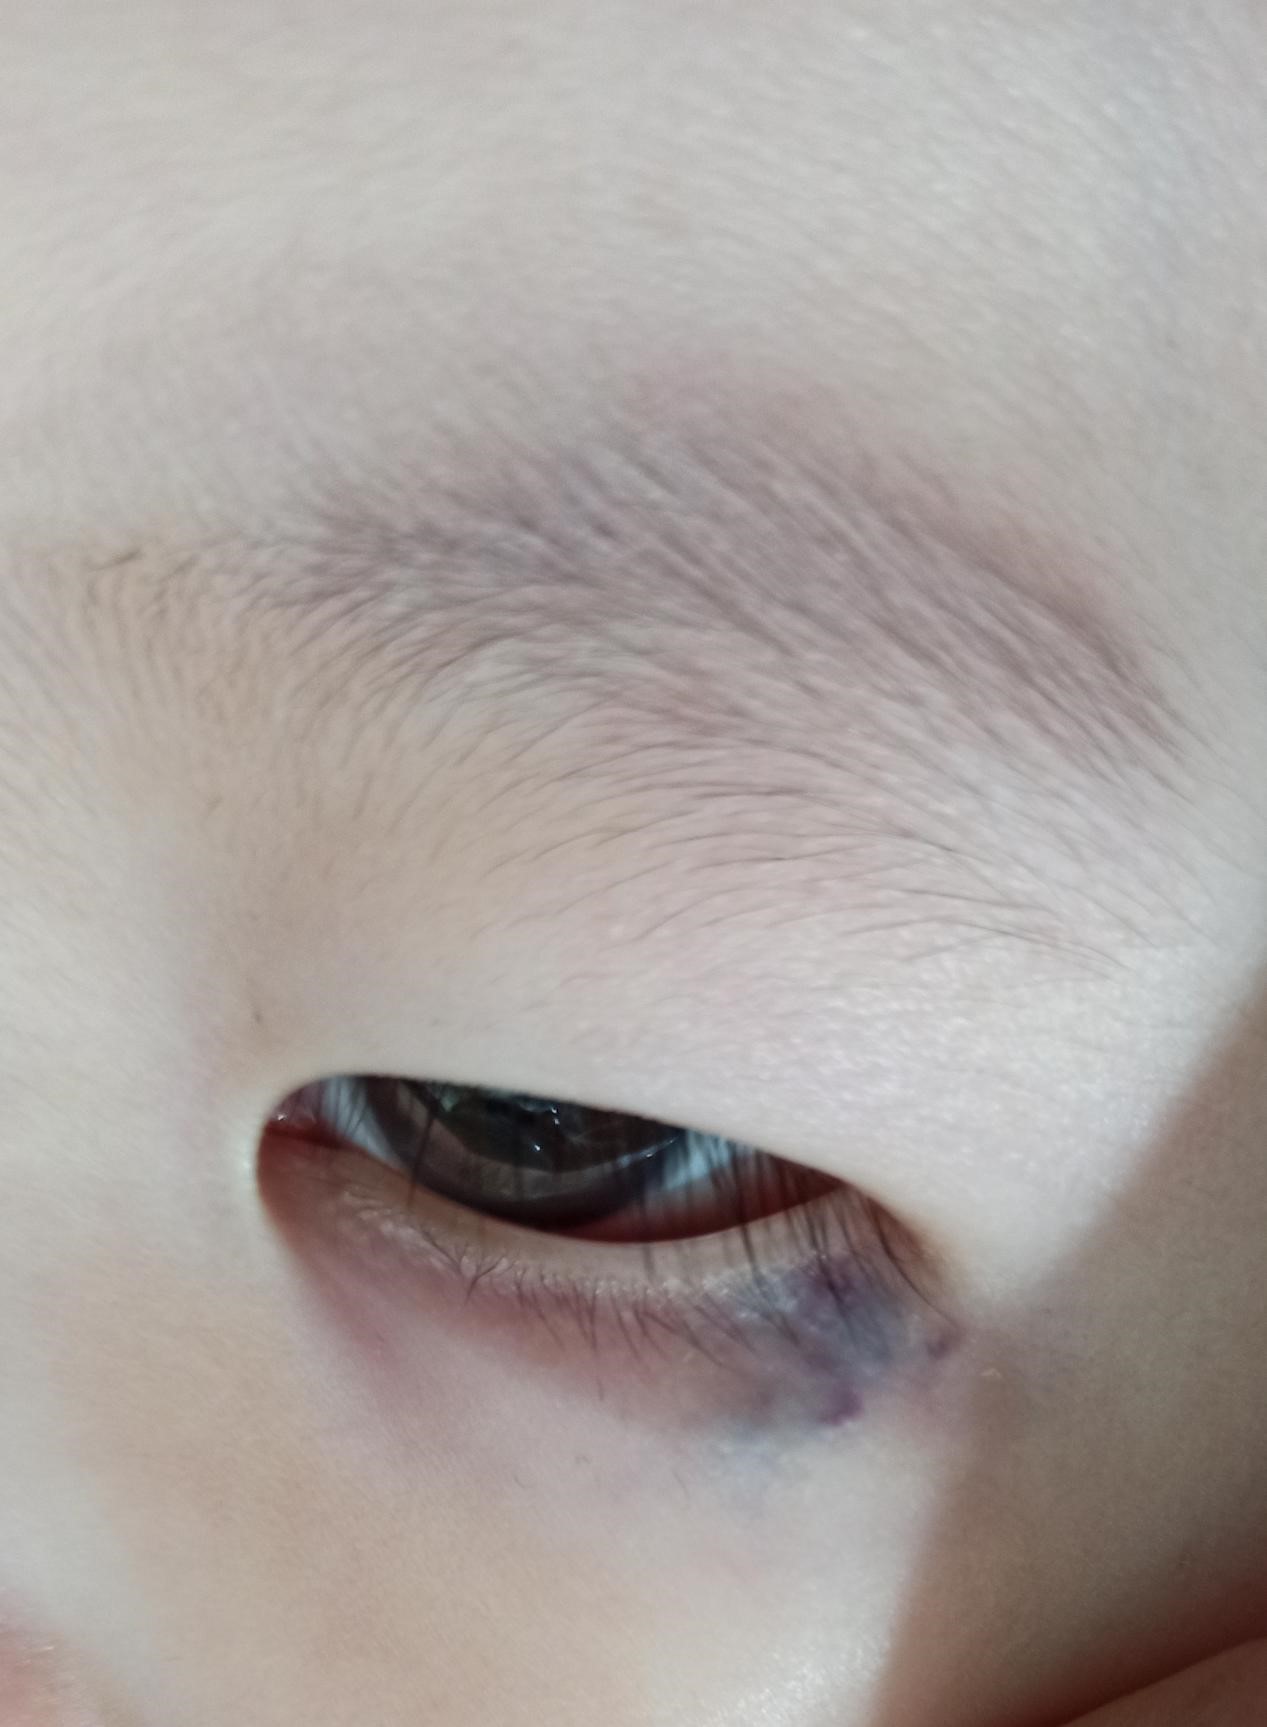 医生您好,我家孩子现在15个月了,左下眼睑有青紫色,疫情原因一直没去